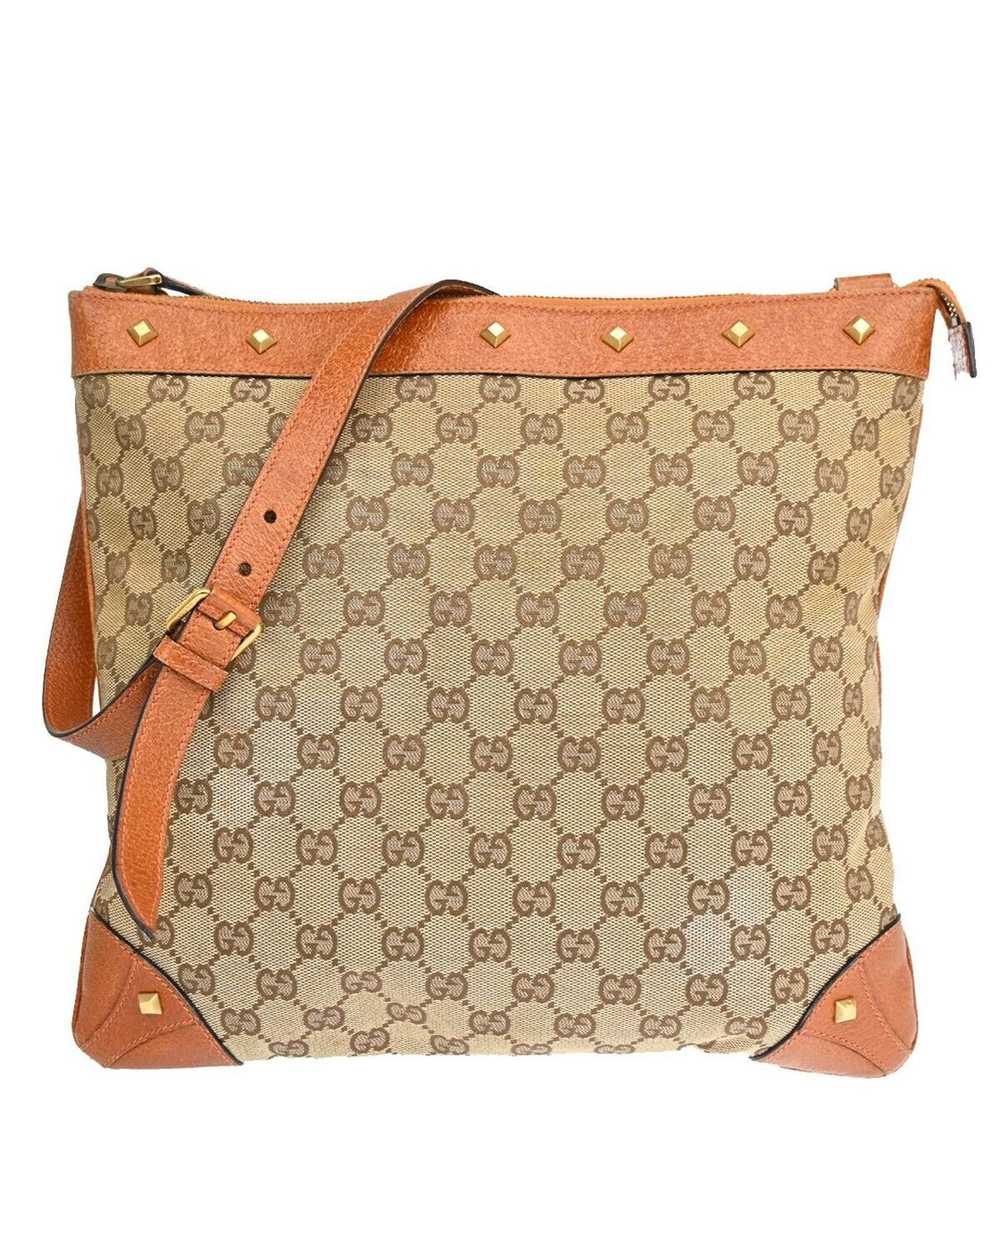 Gucci Canvas Shoulder Bag by Luxury Designer - image 1